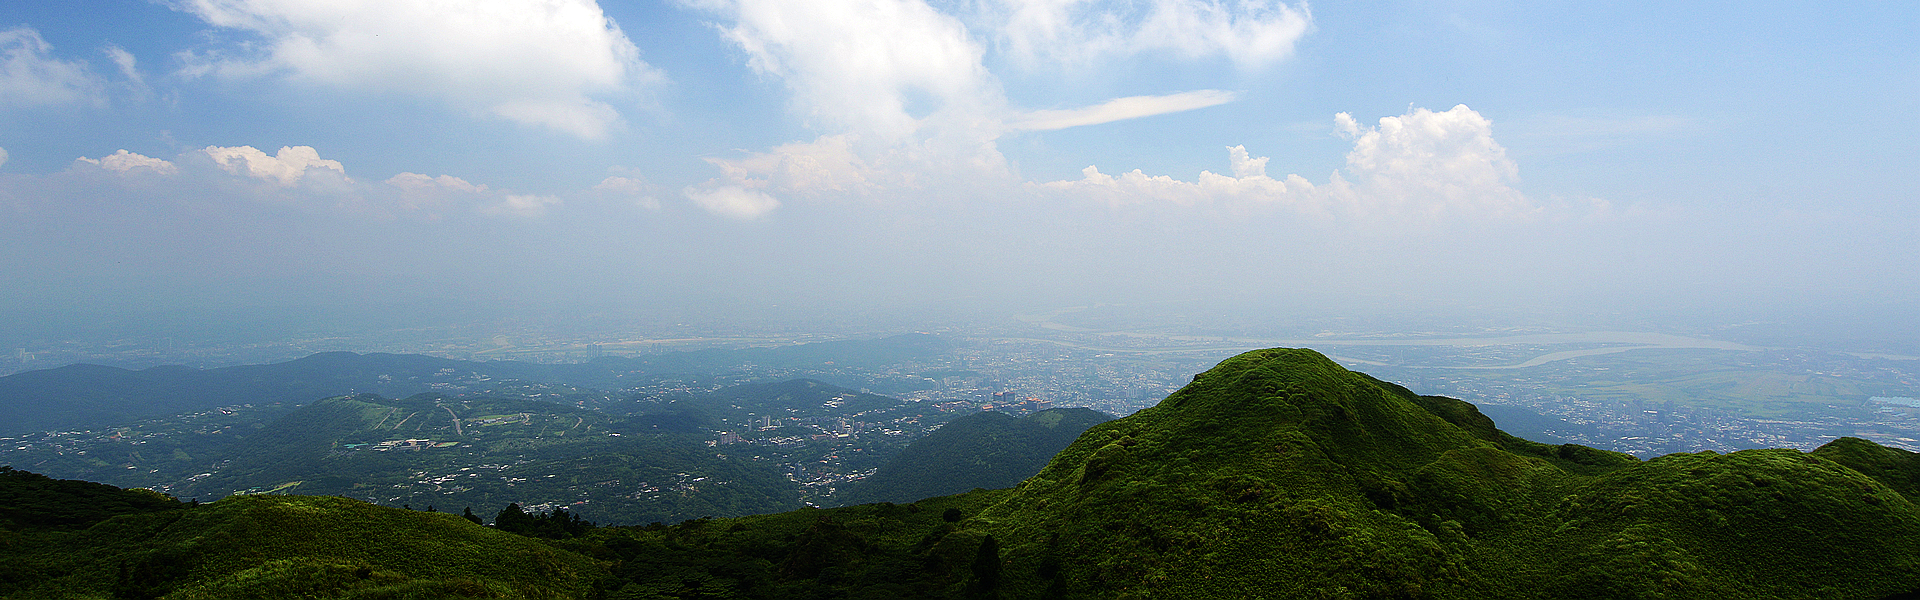 登上台北市第一高峰「七星山」，飽覽遼闊大台北城市風景